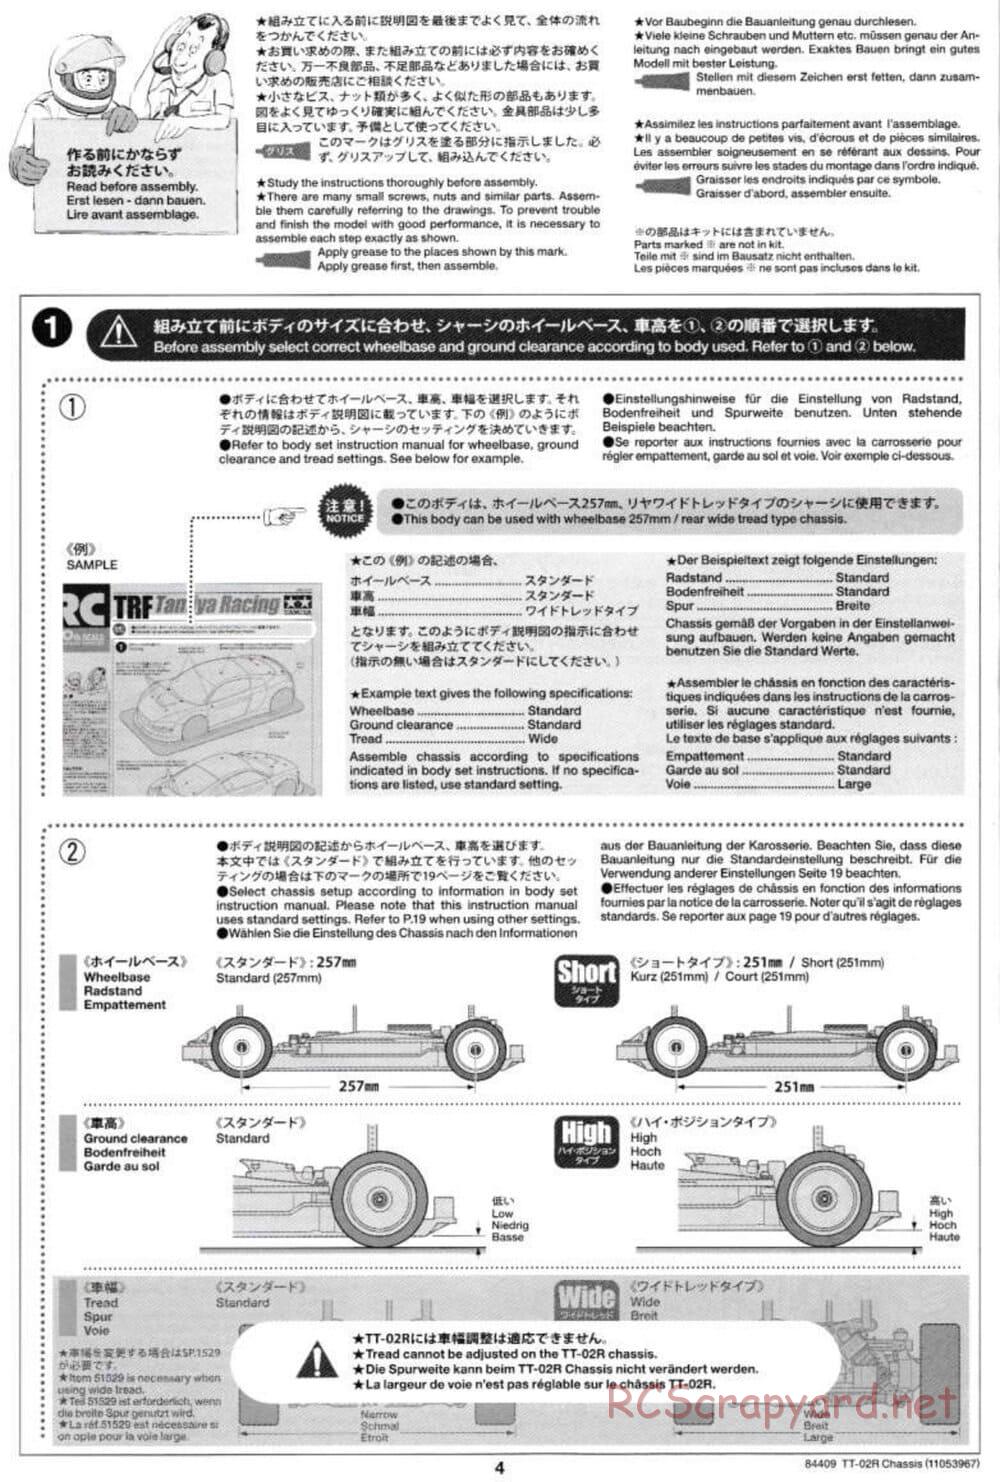 Tamiya - TT-02R Chassis - Manual - Page 4